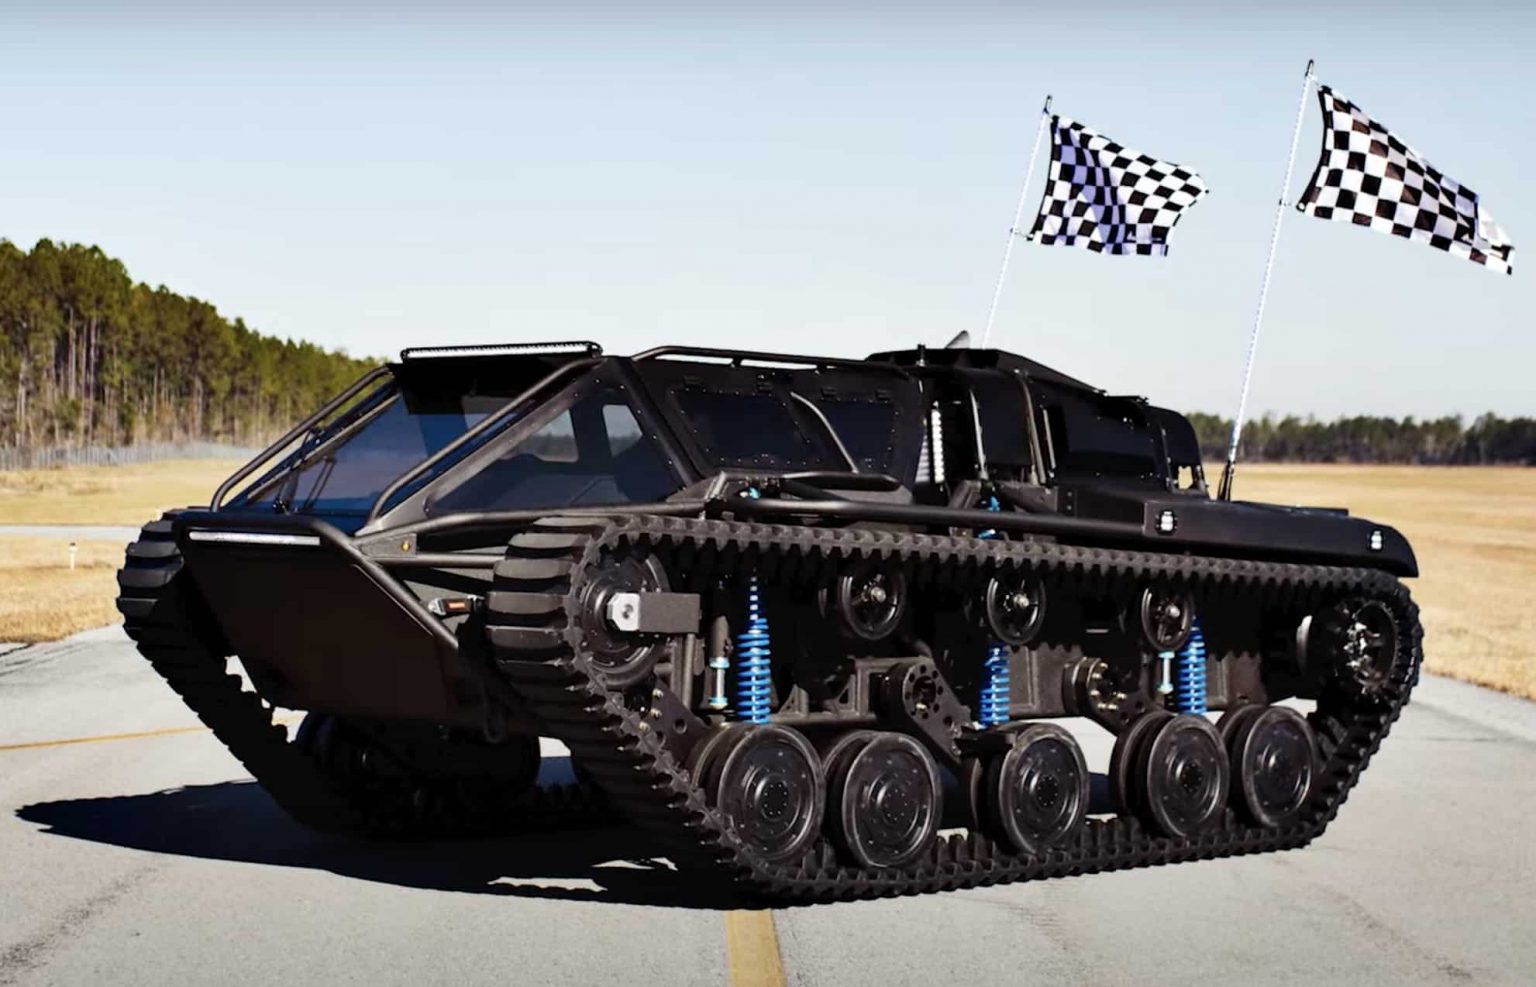 Экстремальные американские вездеходы ripsaw для военных и гражданских нужд. самый быстрый в мире гусеничный танк ripsaw ev2 развивает 100 км/ч: он обошелся канье уэсту в полмиллиона долларов